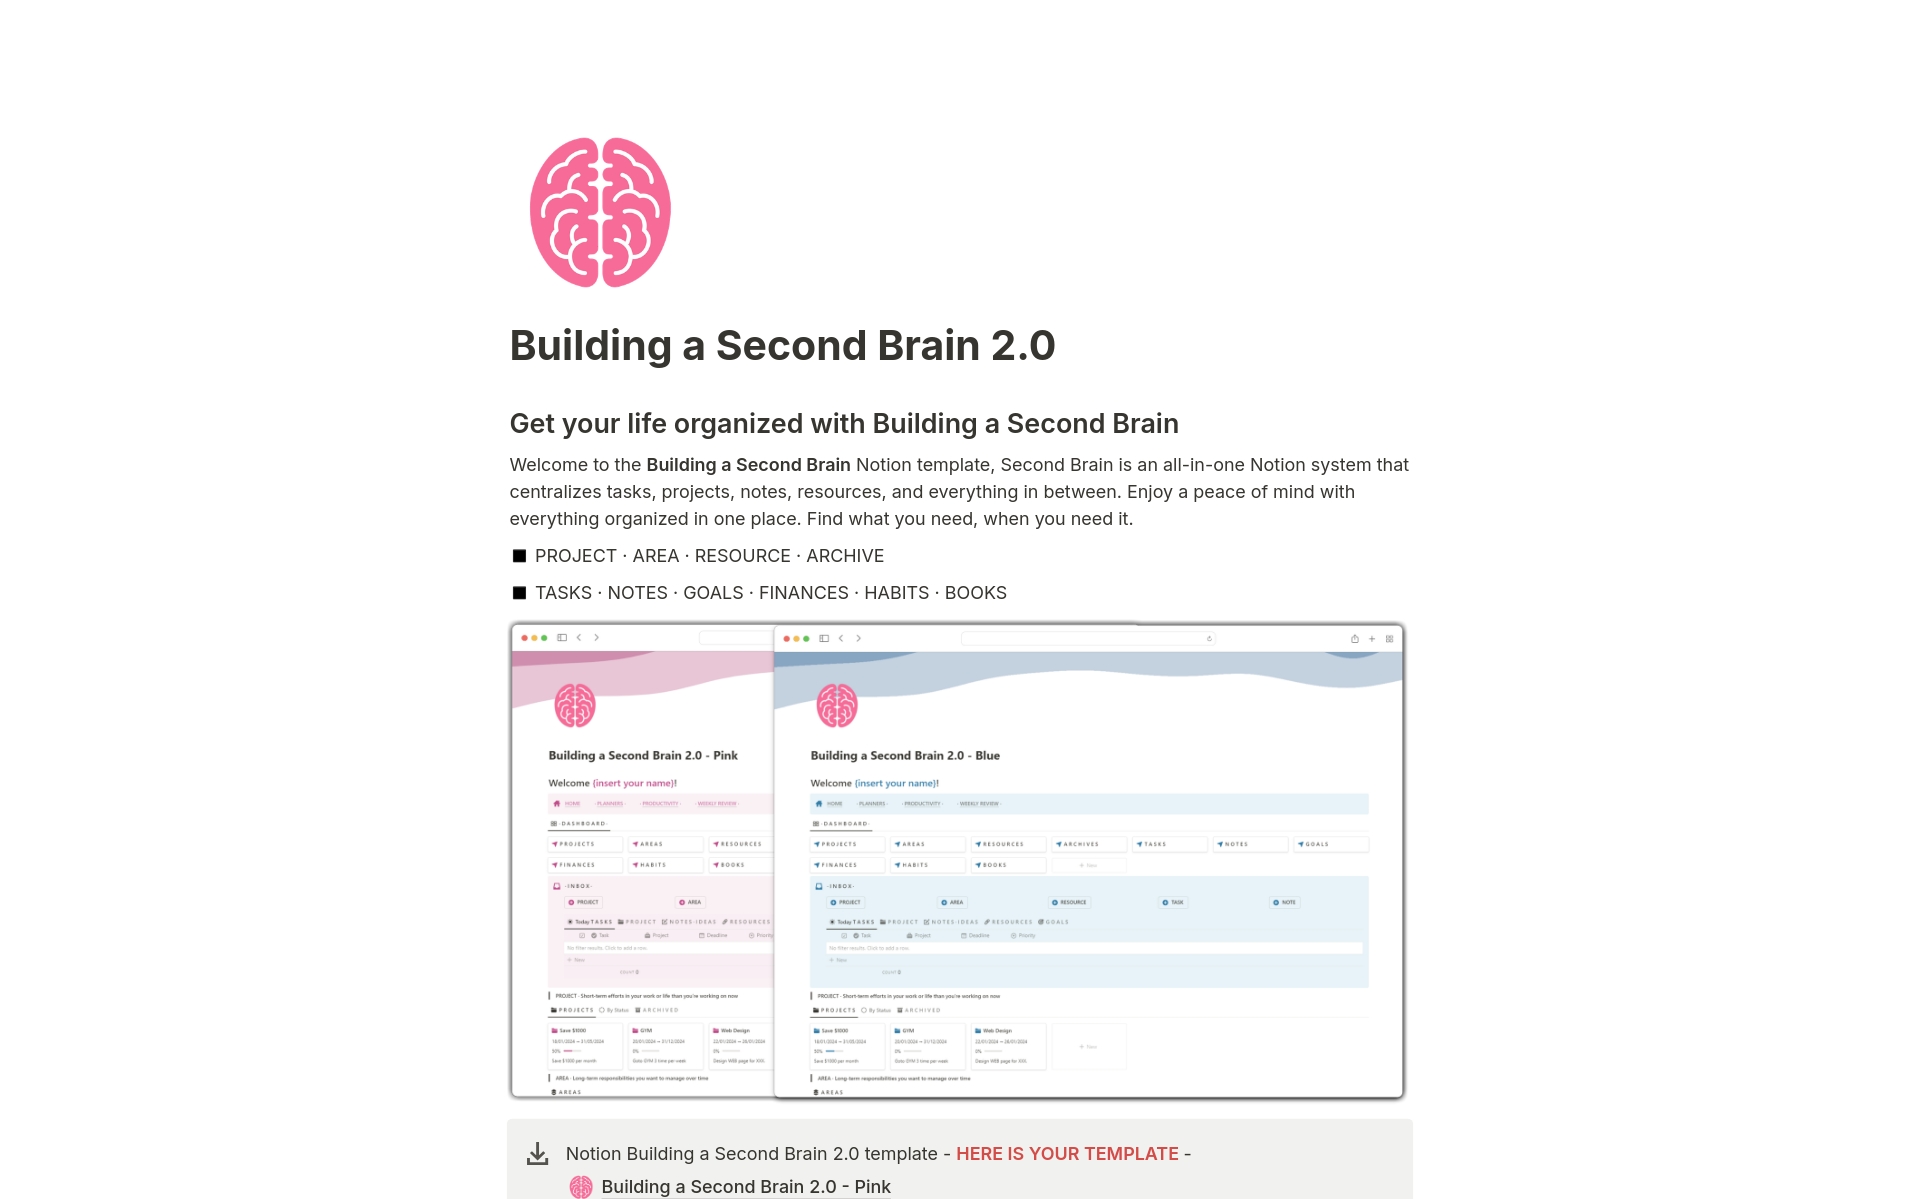 Vista previa de una plantilla para Building a Second Brain 2.0